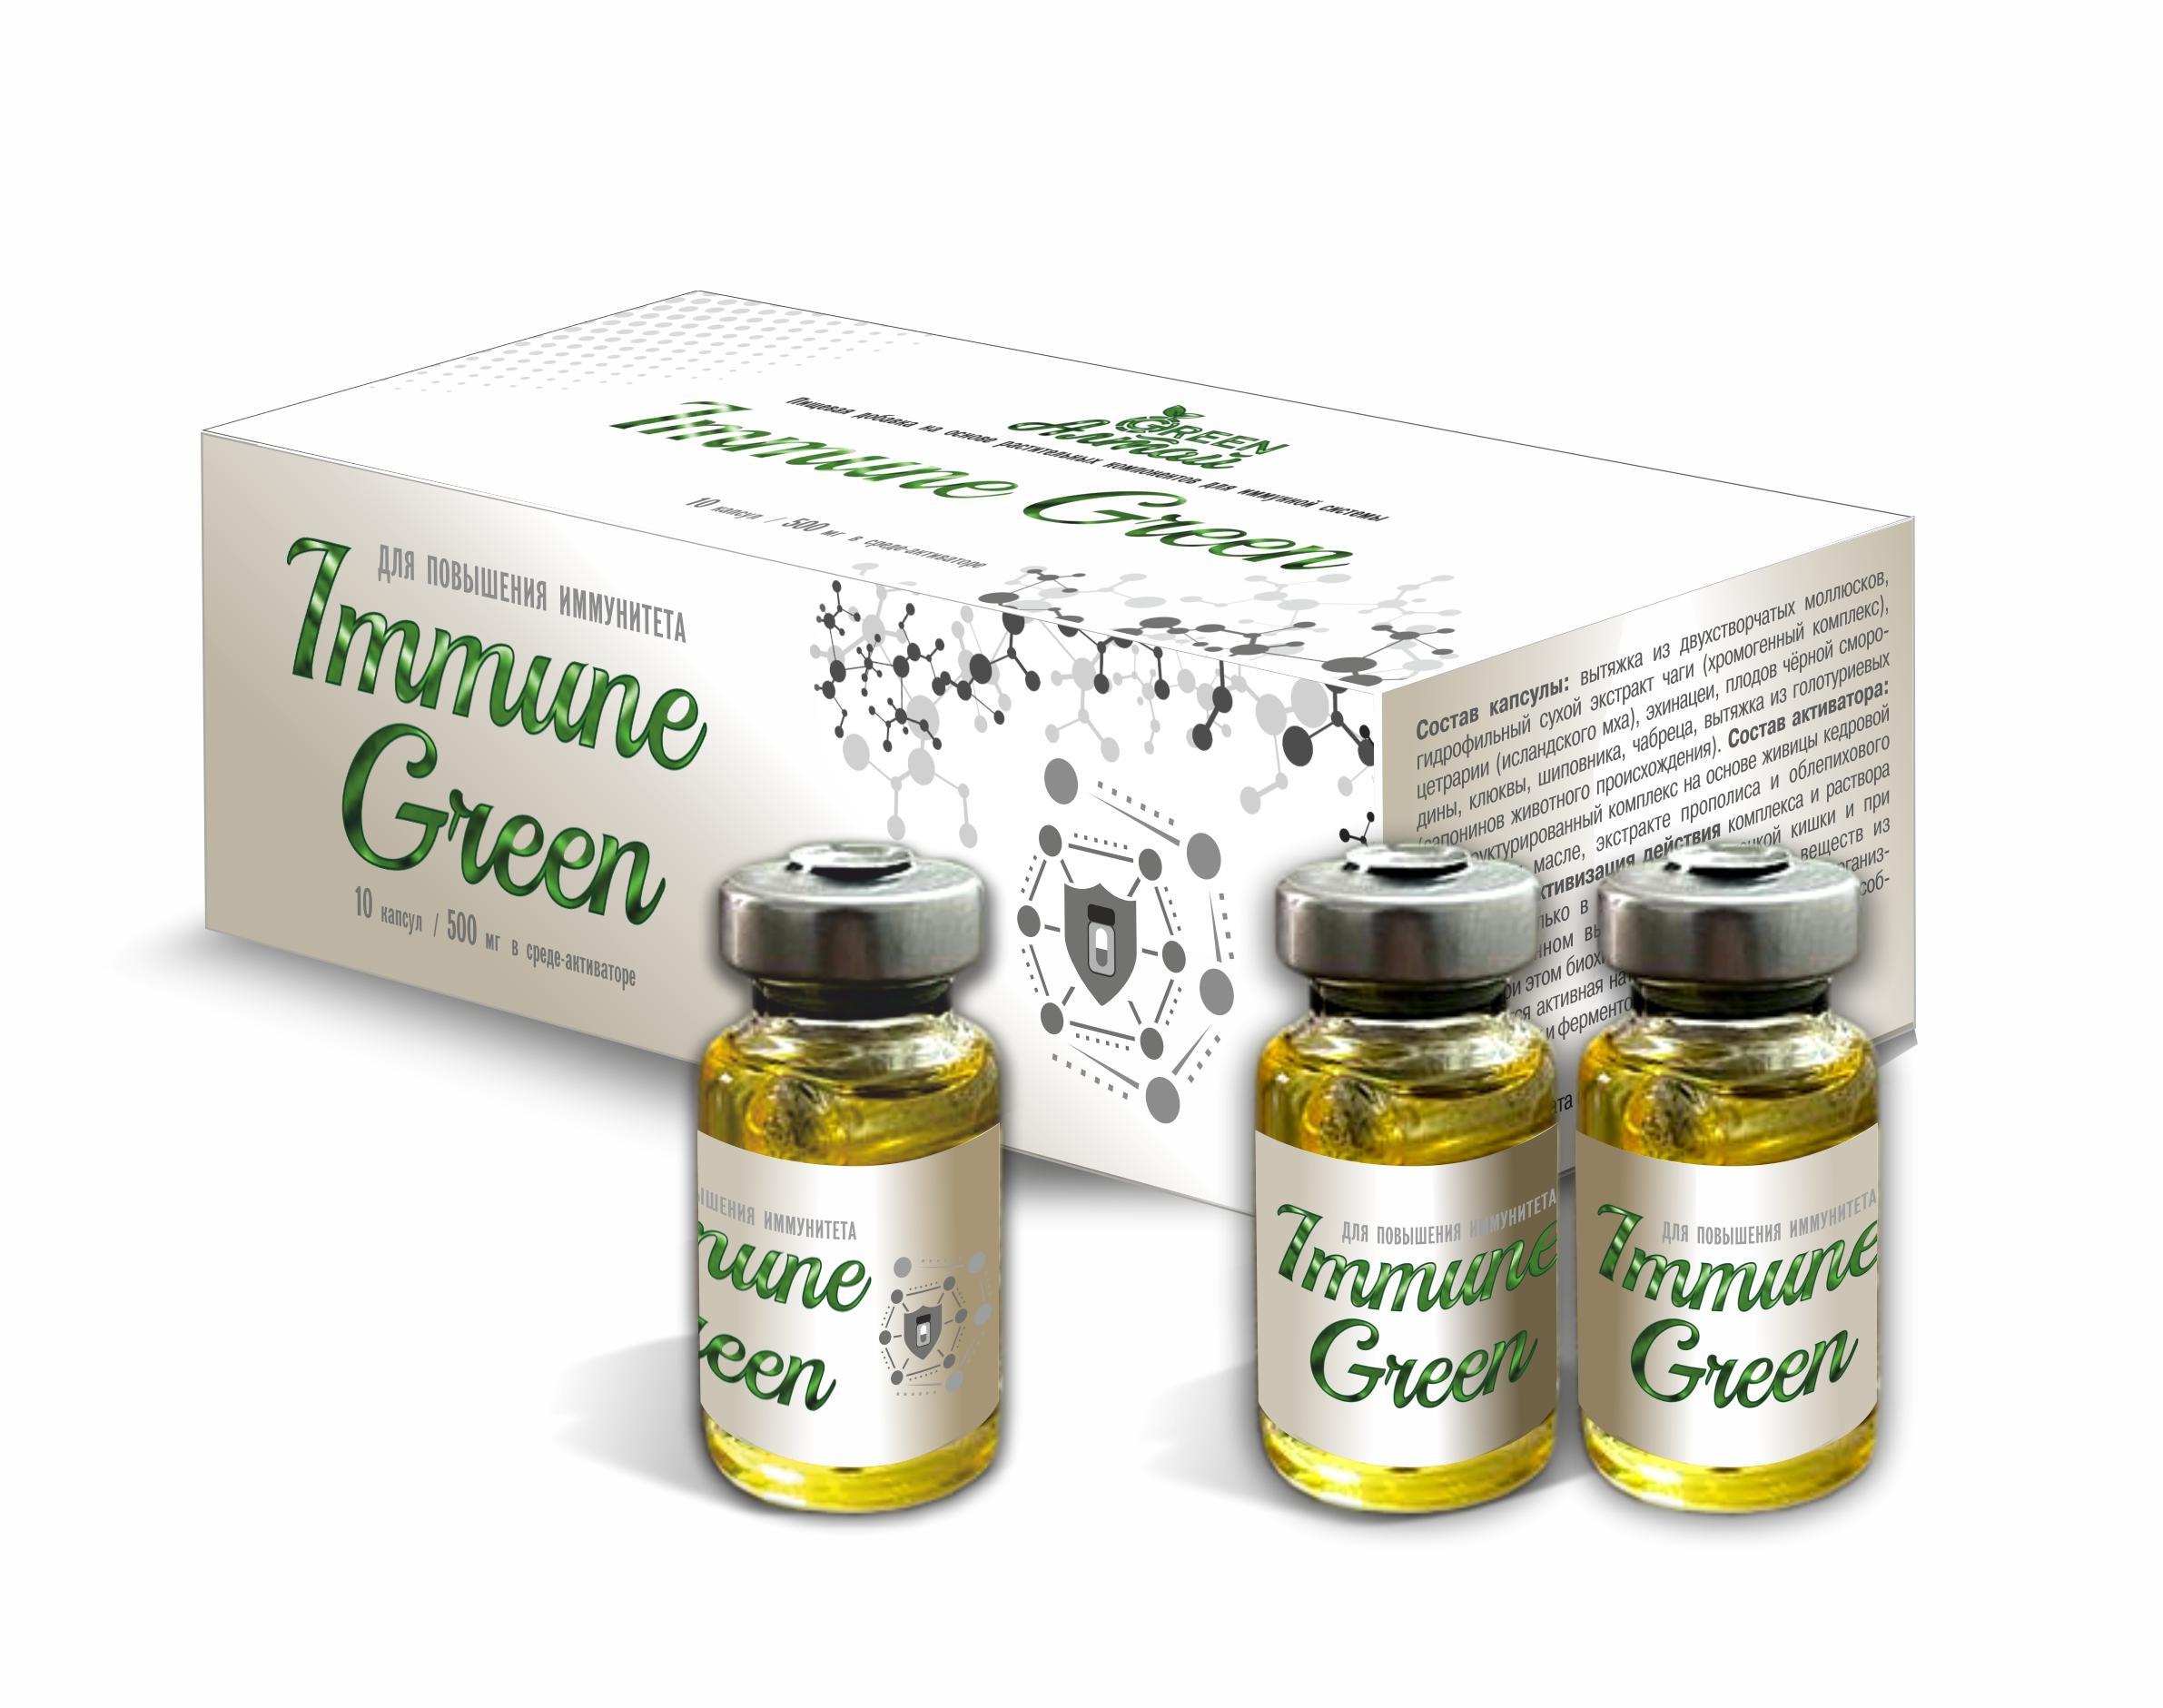 Immune Green Повышение иммунитета, капсула в среде-активаторе, 10 шт*500 мг, Амбрелла novoslim новослим kapsoila капсула в среде активаторе 10 шт по 500 мг сашера мед